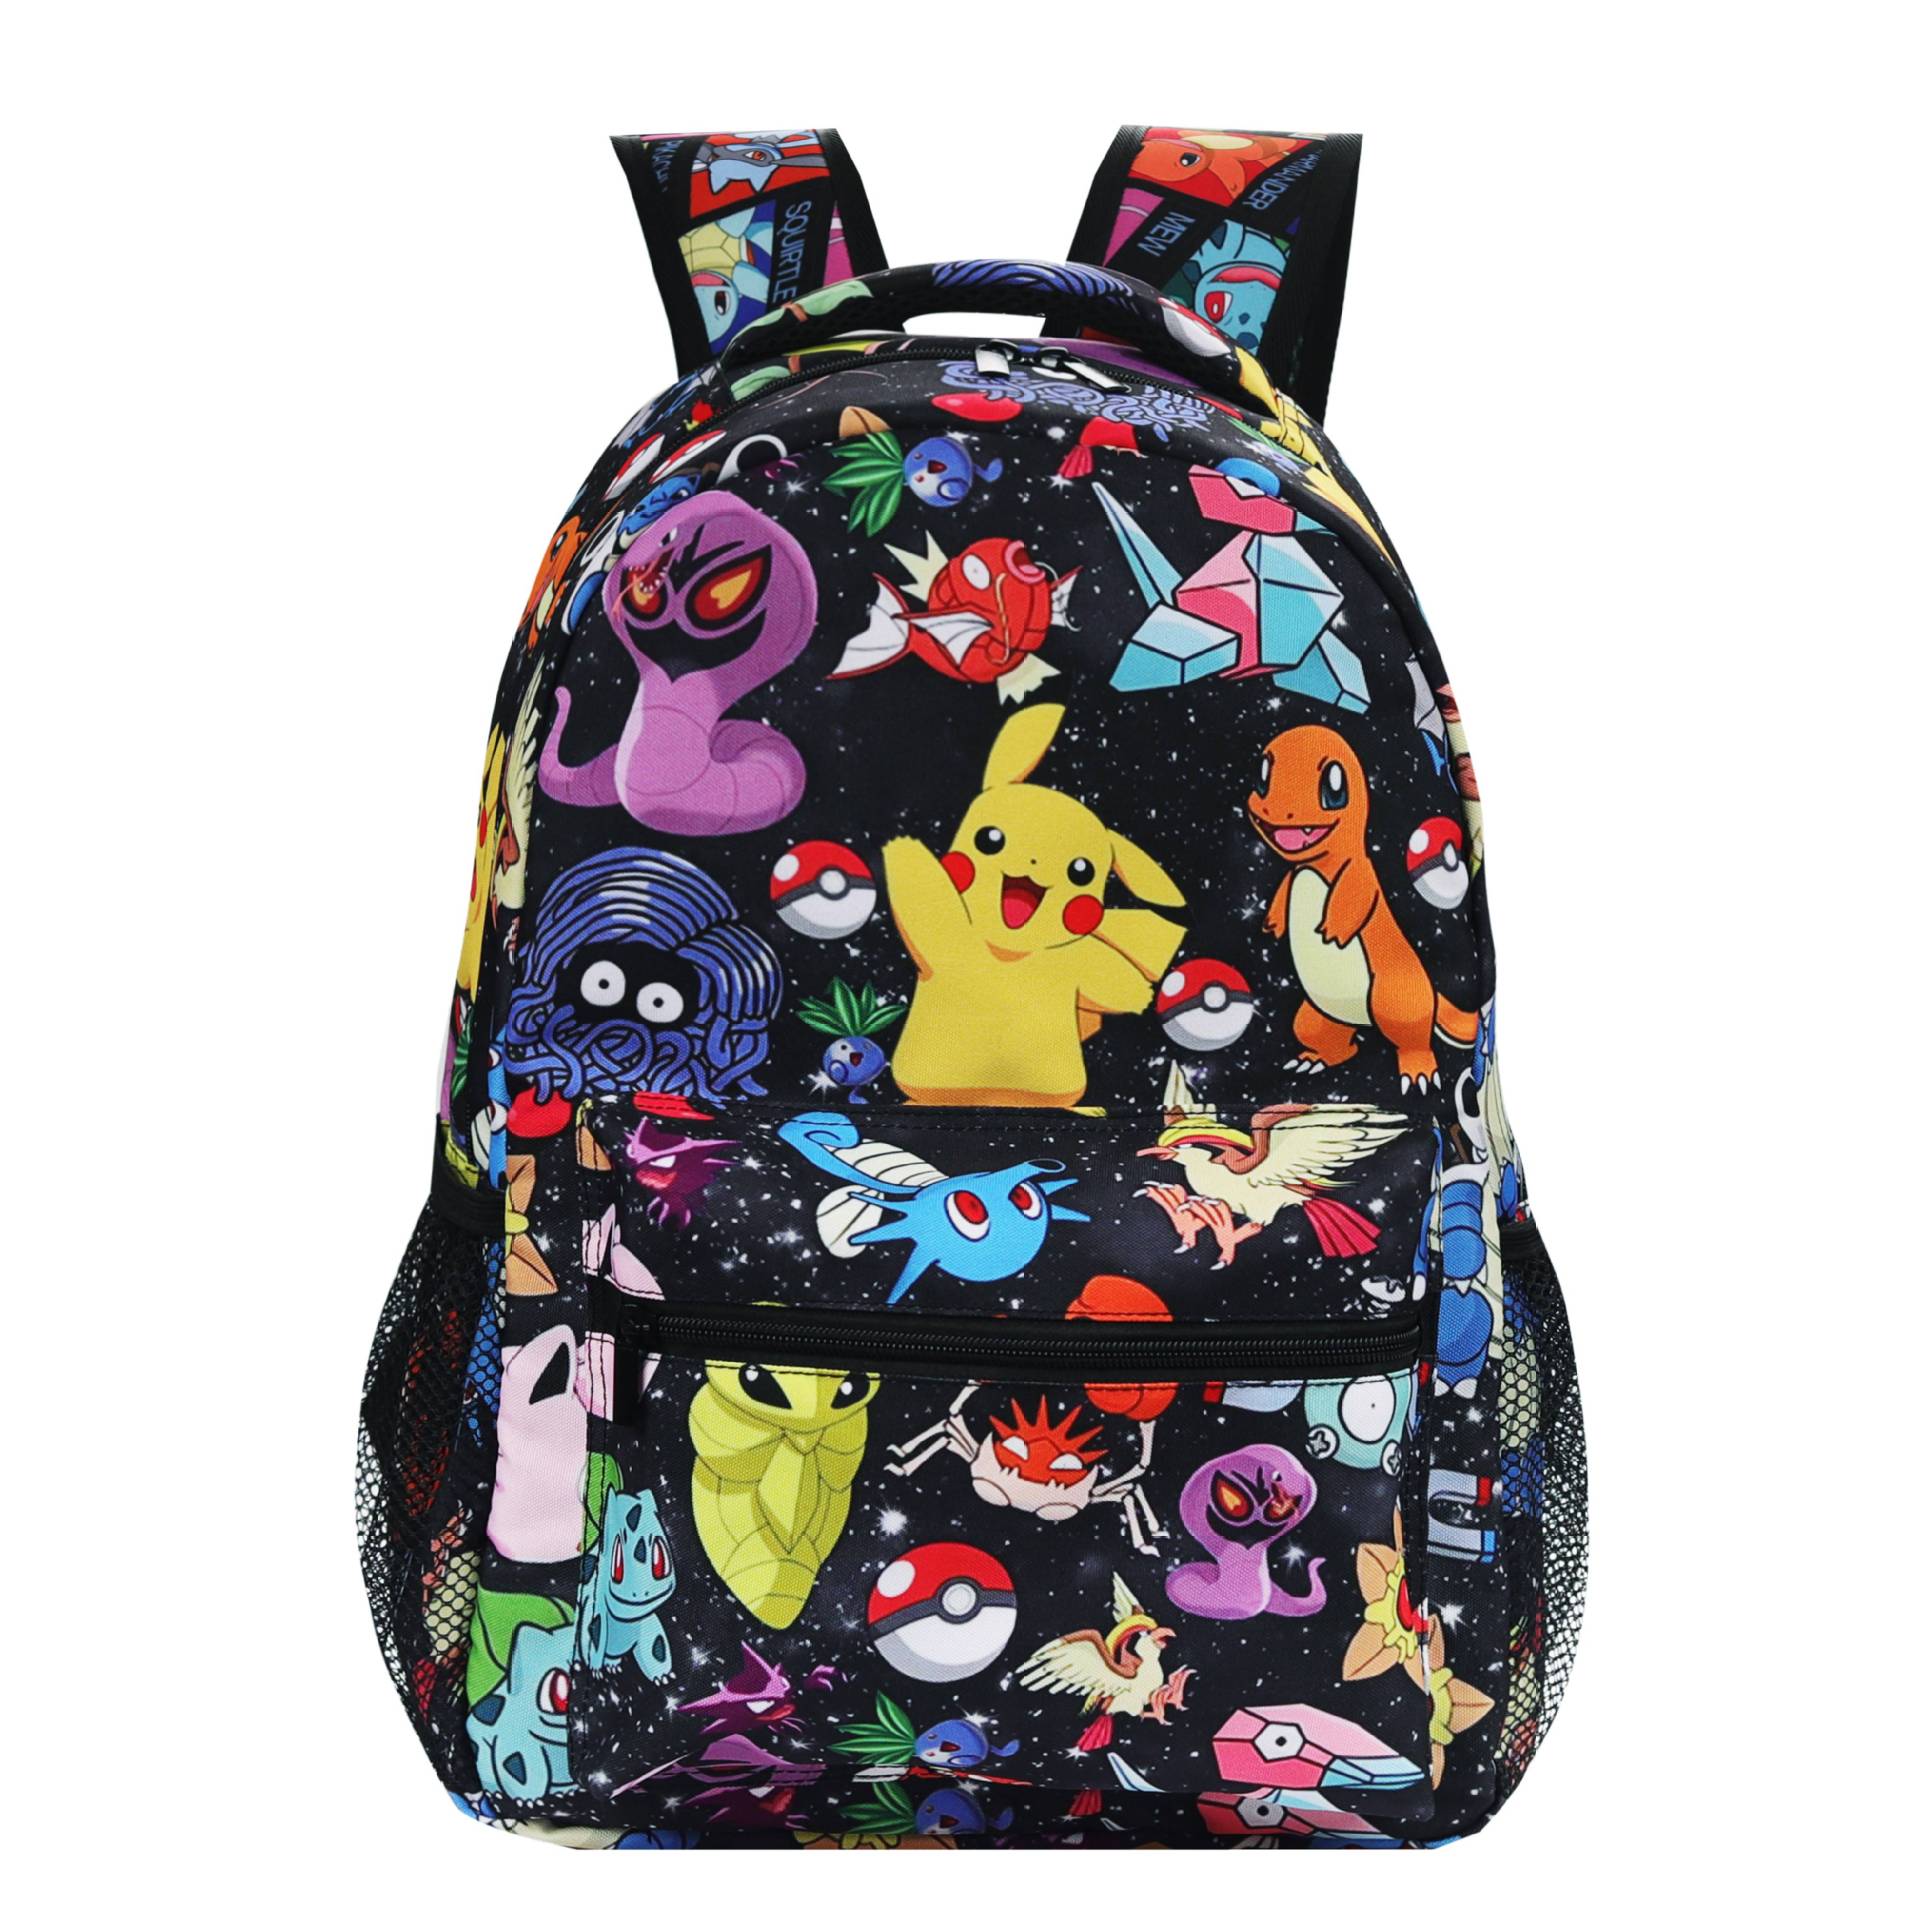 Pokemon Pikachu Backpack for Kids Pokemon Anime School Backpack Ideal Present